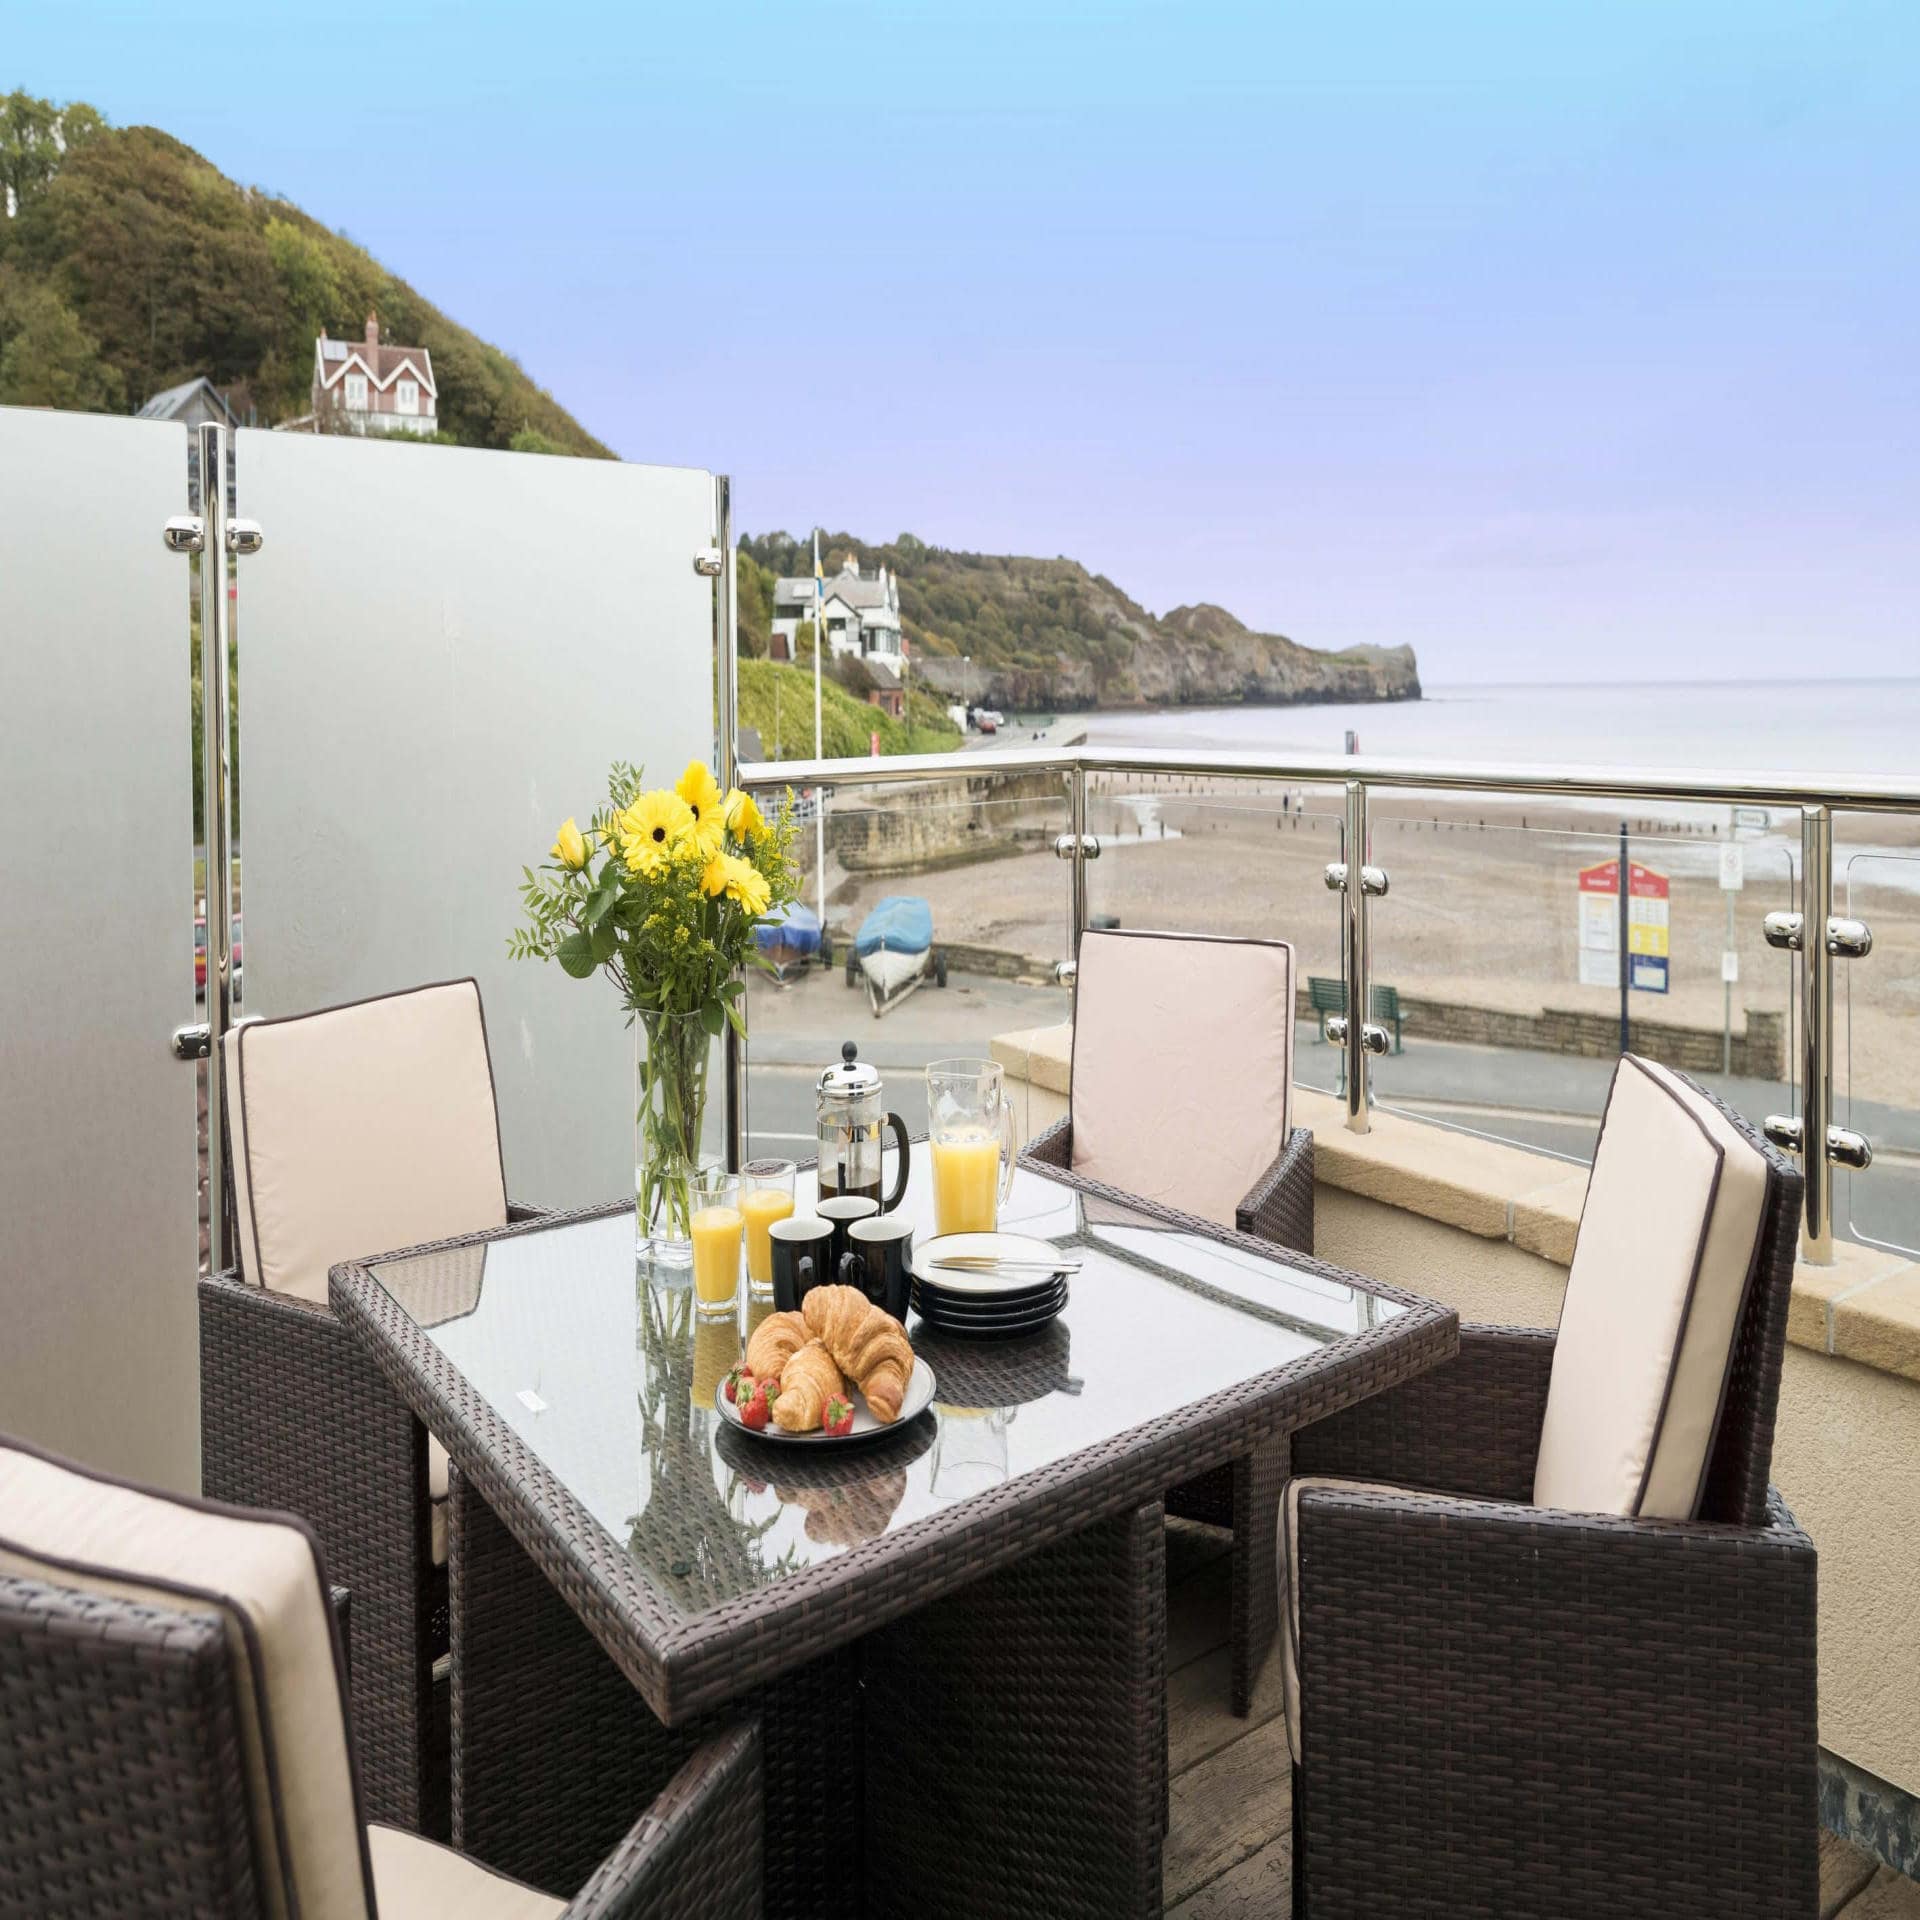 Balkon mit gedecktem Frühstückstisch für 4 Personen und Blick auf den Strand der Nordsee.